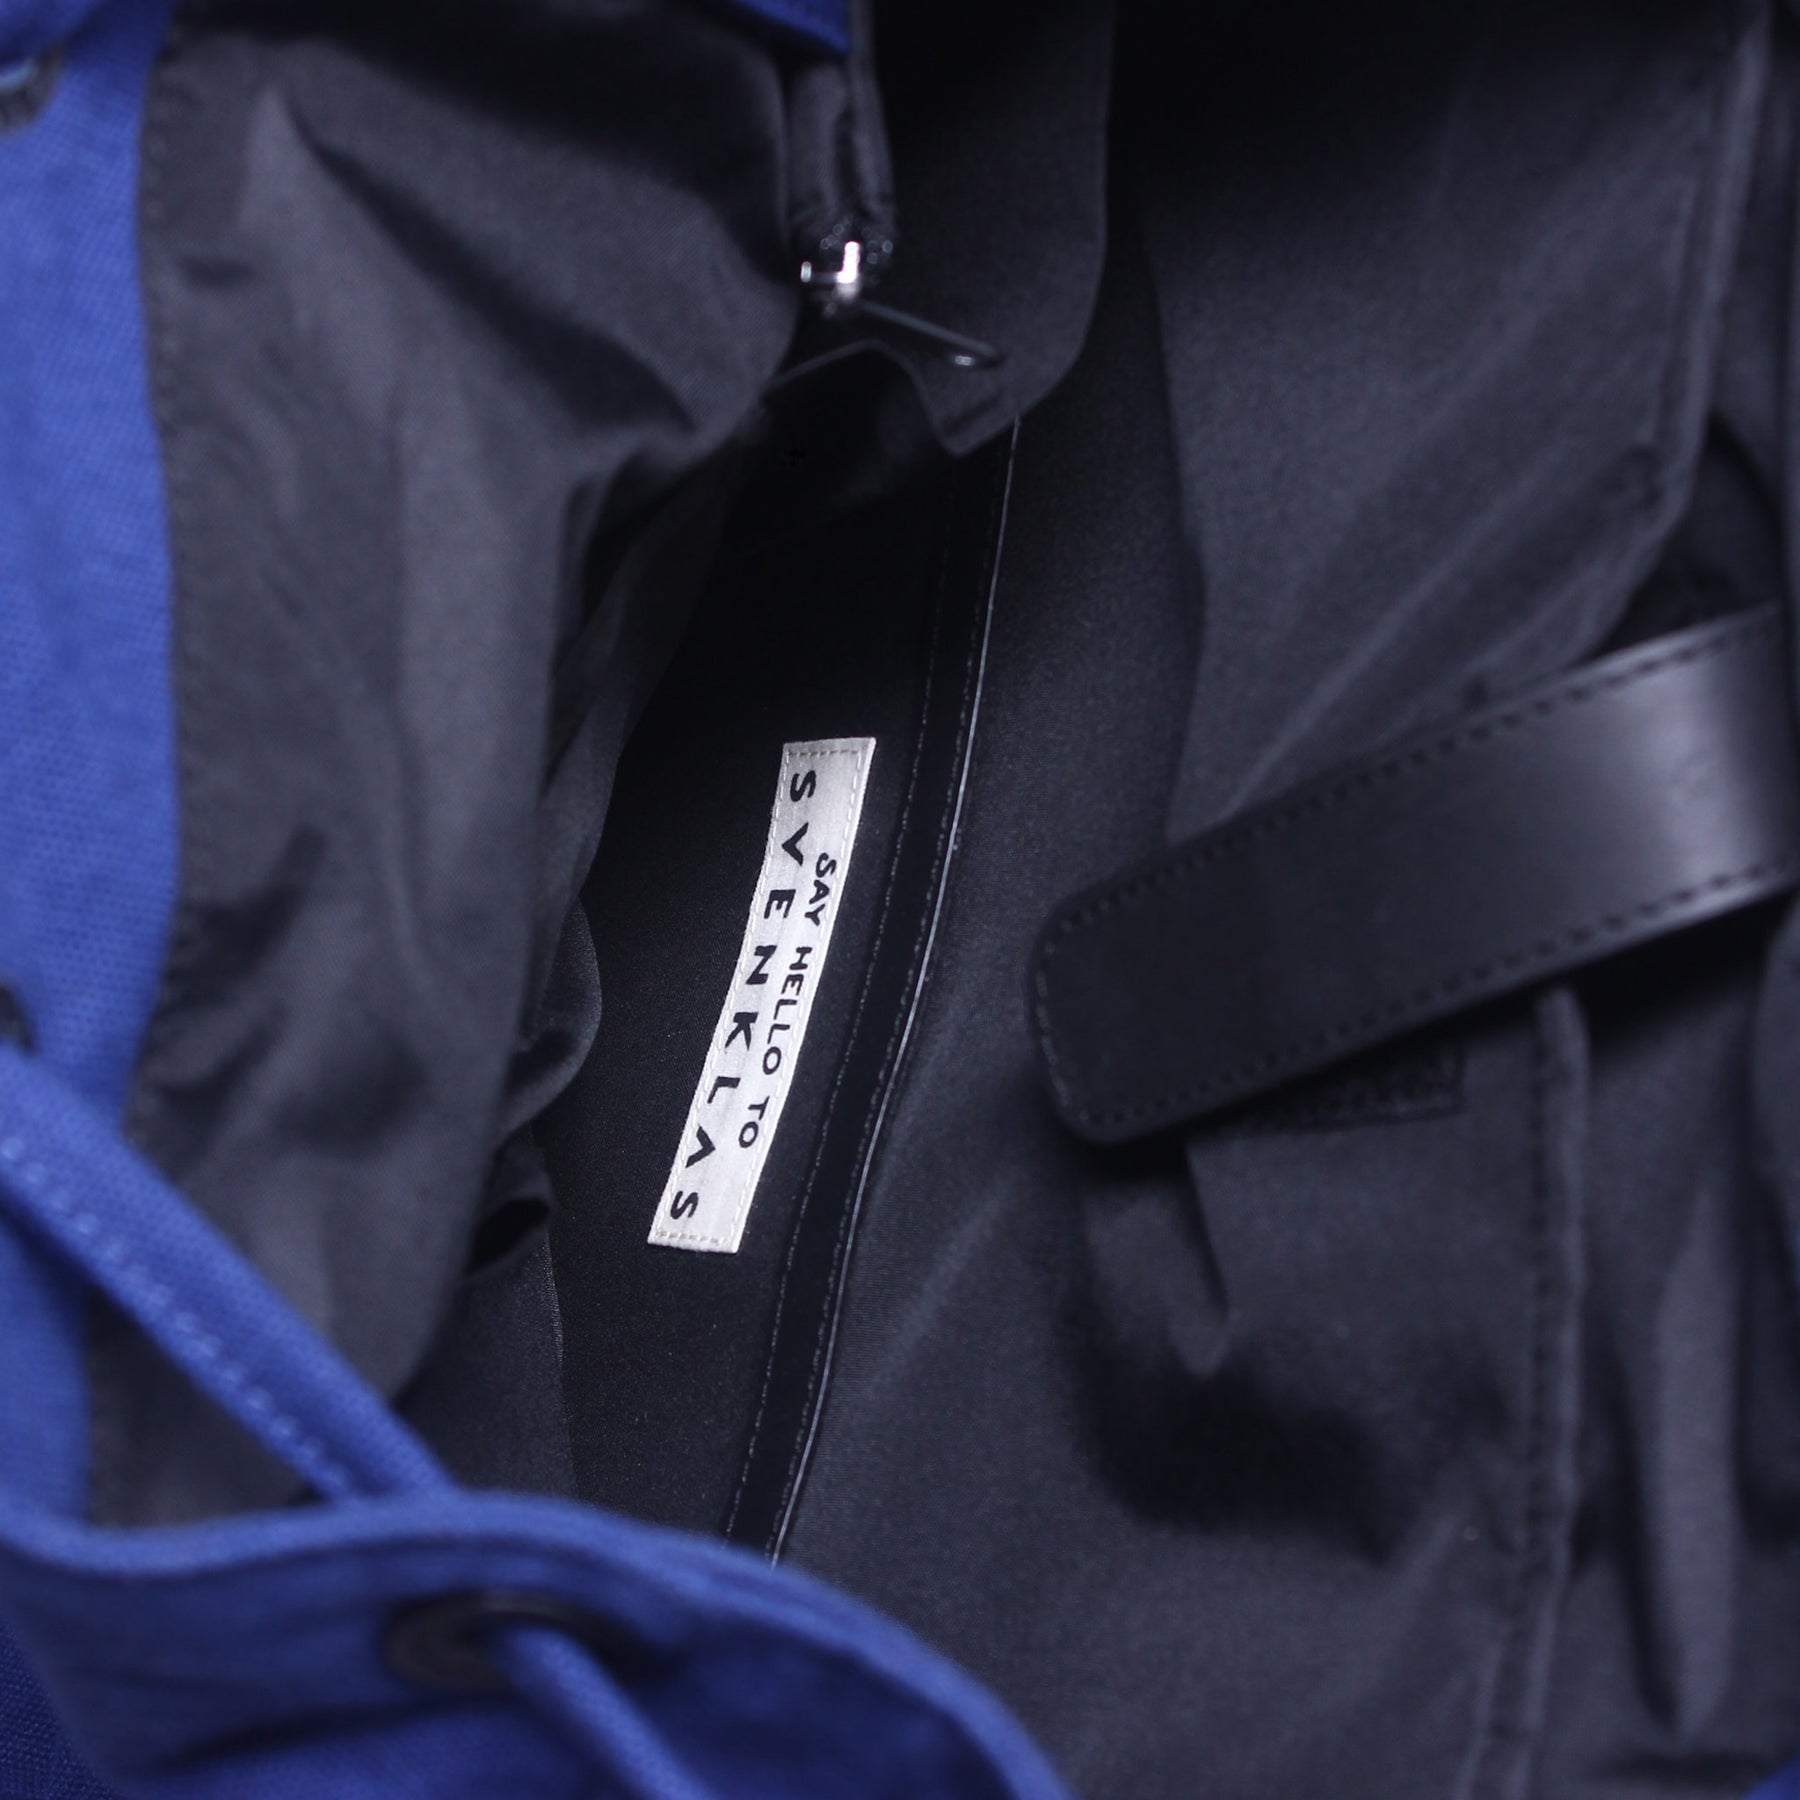 Svenklas hagen blue backpack